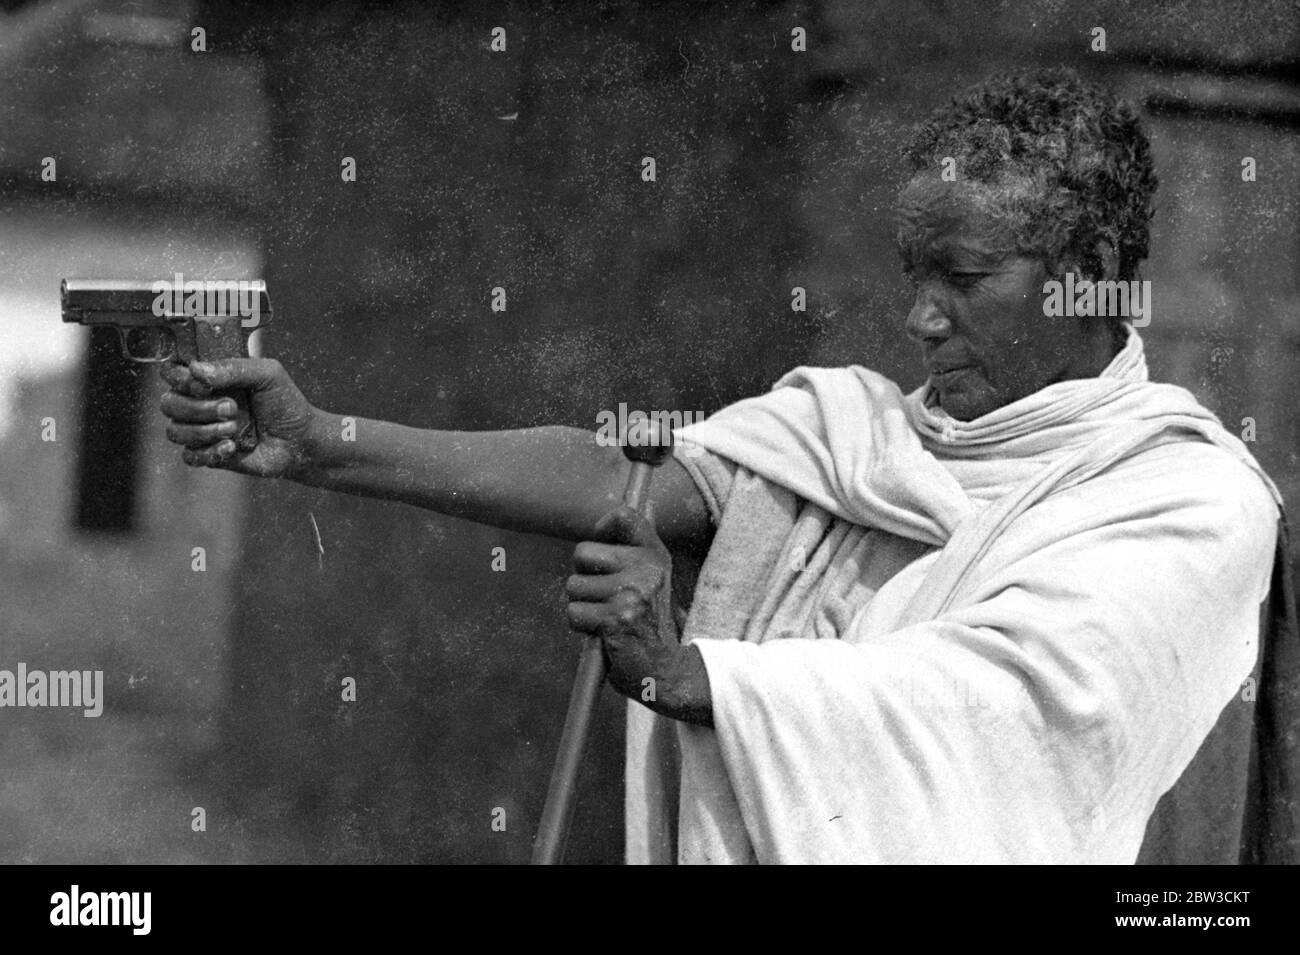 Abissiniana di 60 anni che uccise 50 italiani ad Adowa combatterà di nuovo . Farlenekh , e la vecchia Abissiniana che combatté nella battaglia di Adowa e vide l'Italia schiacciata 40 anni fa , ha chiesto all'imperatore haile Selassie un mulo e un fucile per poter nuovamente combattere gli italiani nell'Ogaden . 26 settembre 1935 Foto Stock